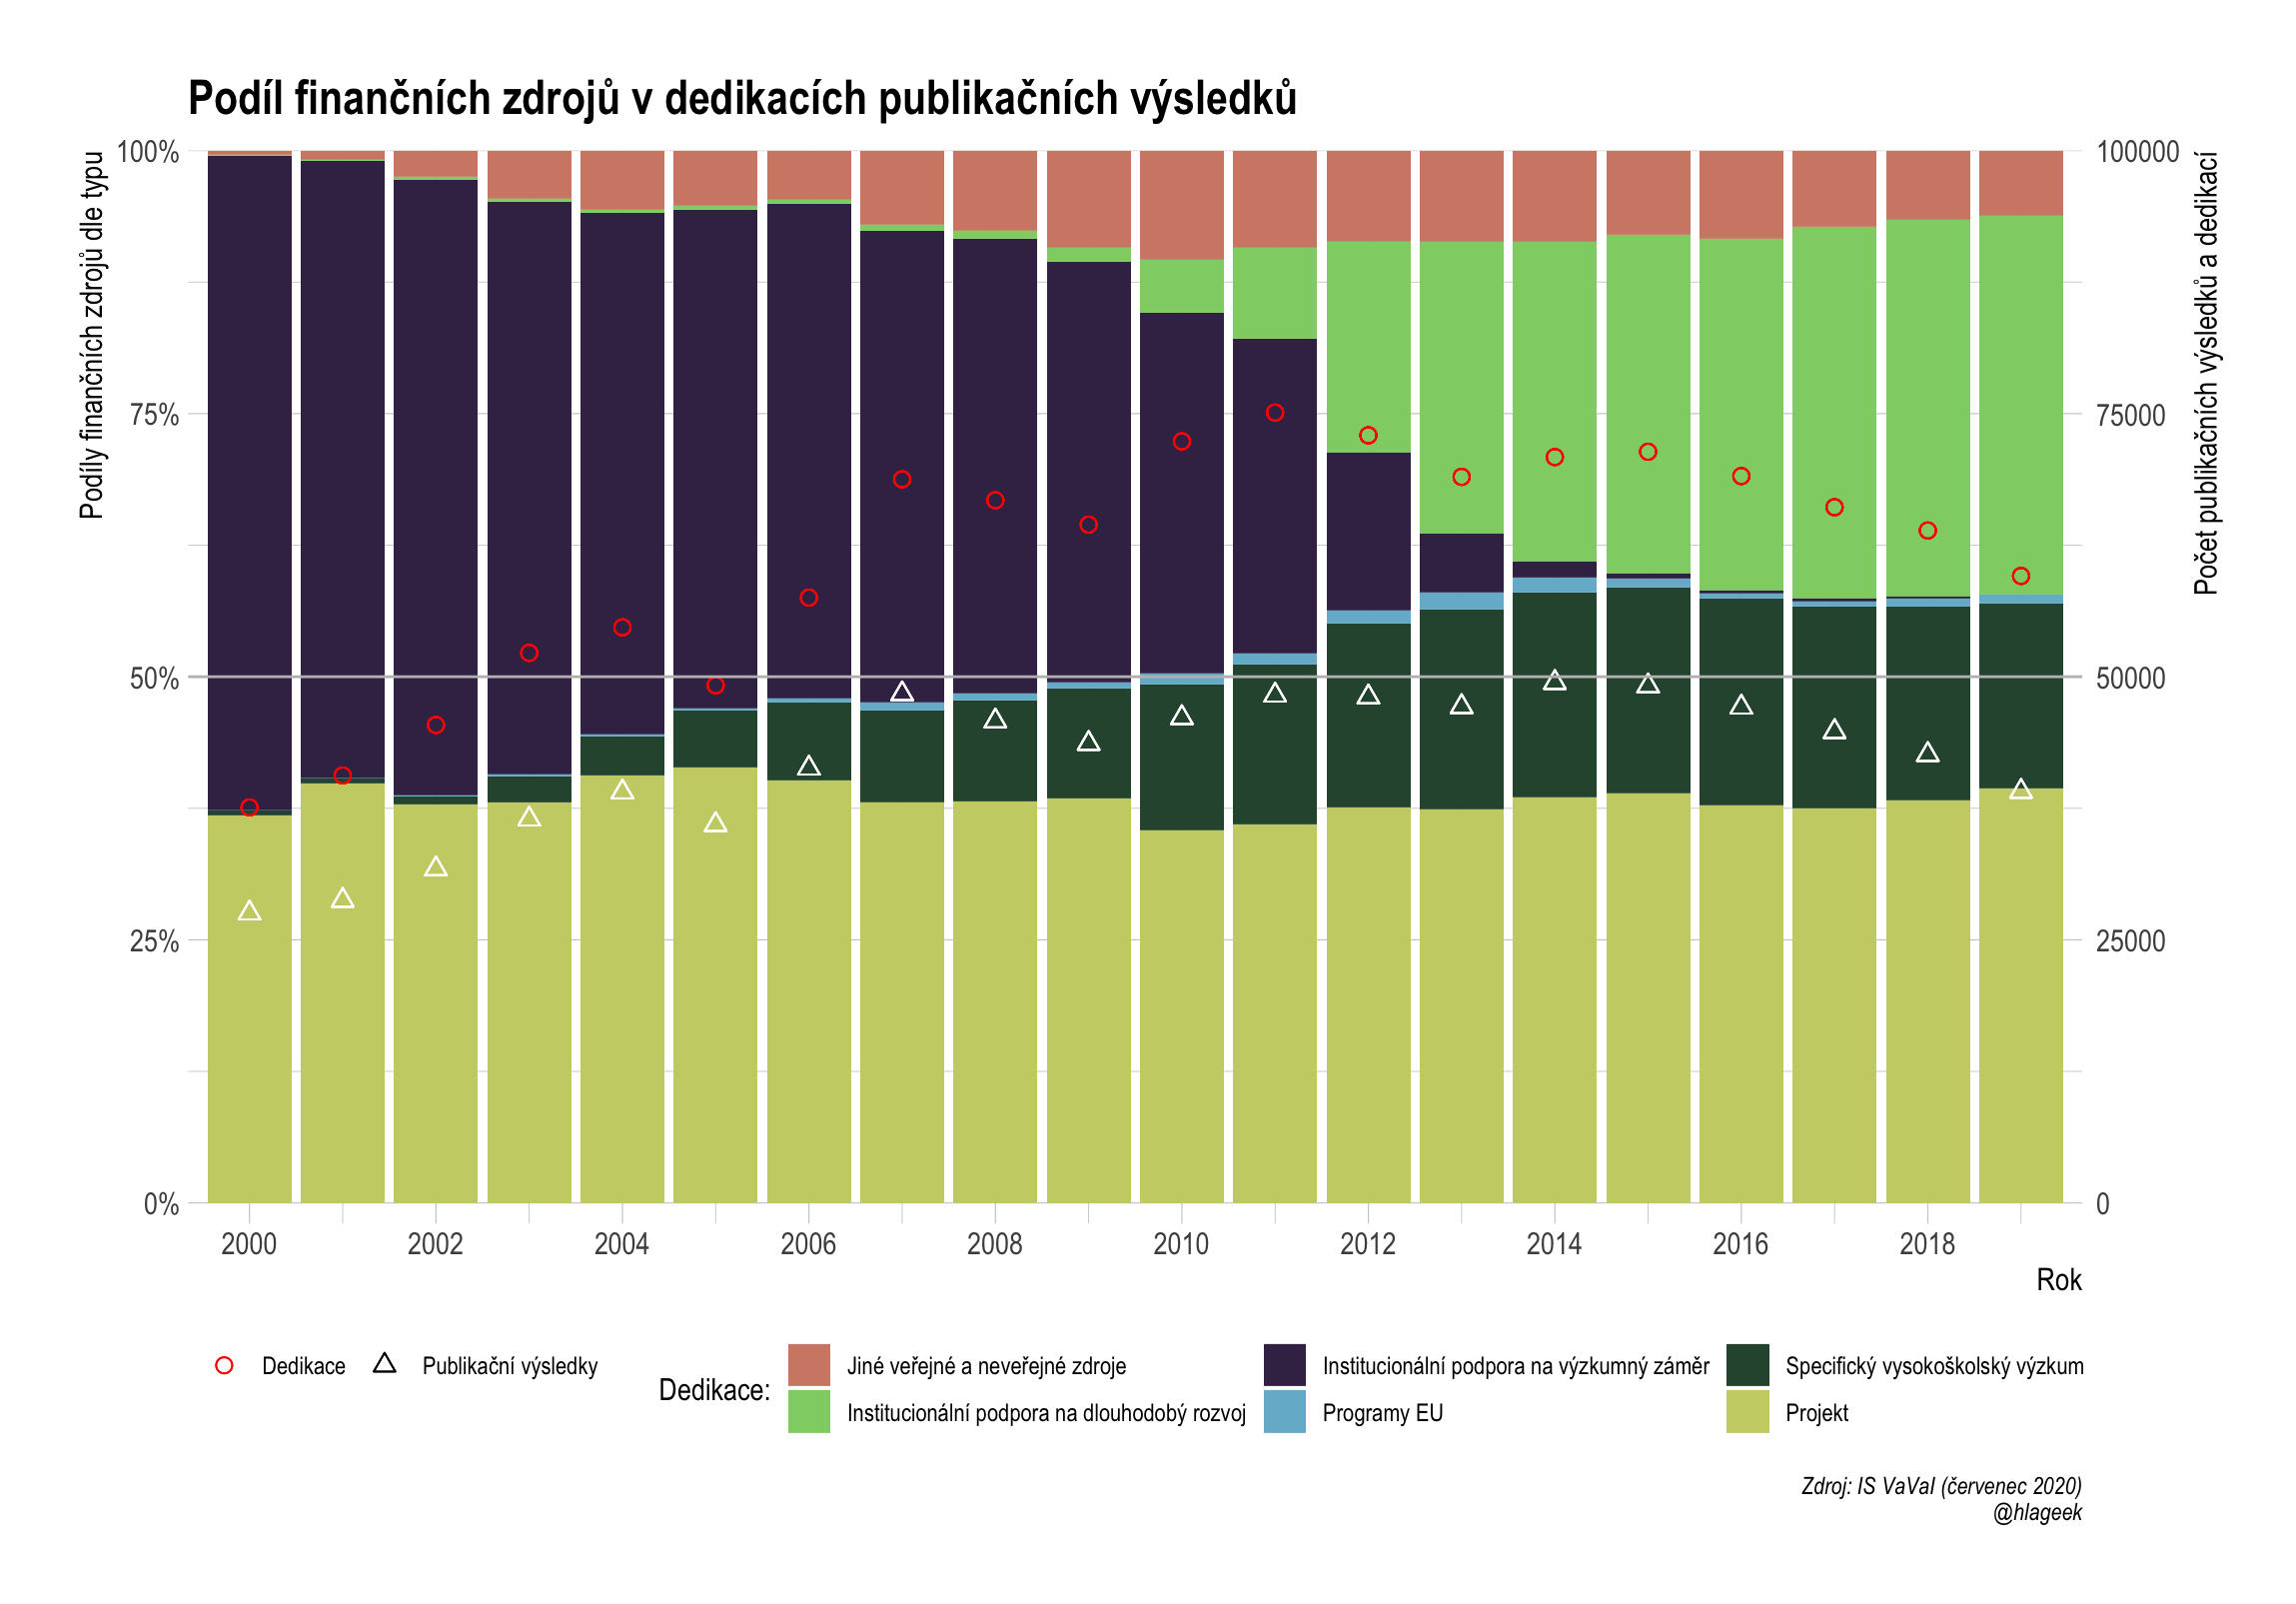 Podíl finančních zdrojů  v dedikacích publikačních výsledků české vědy